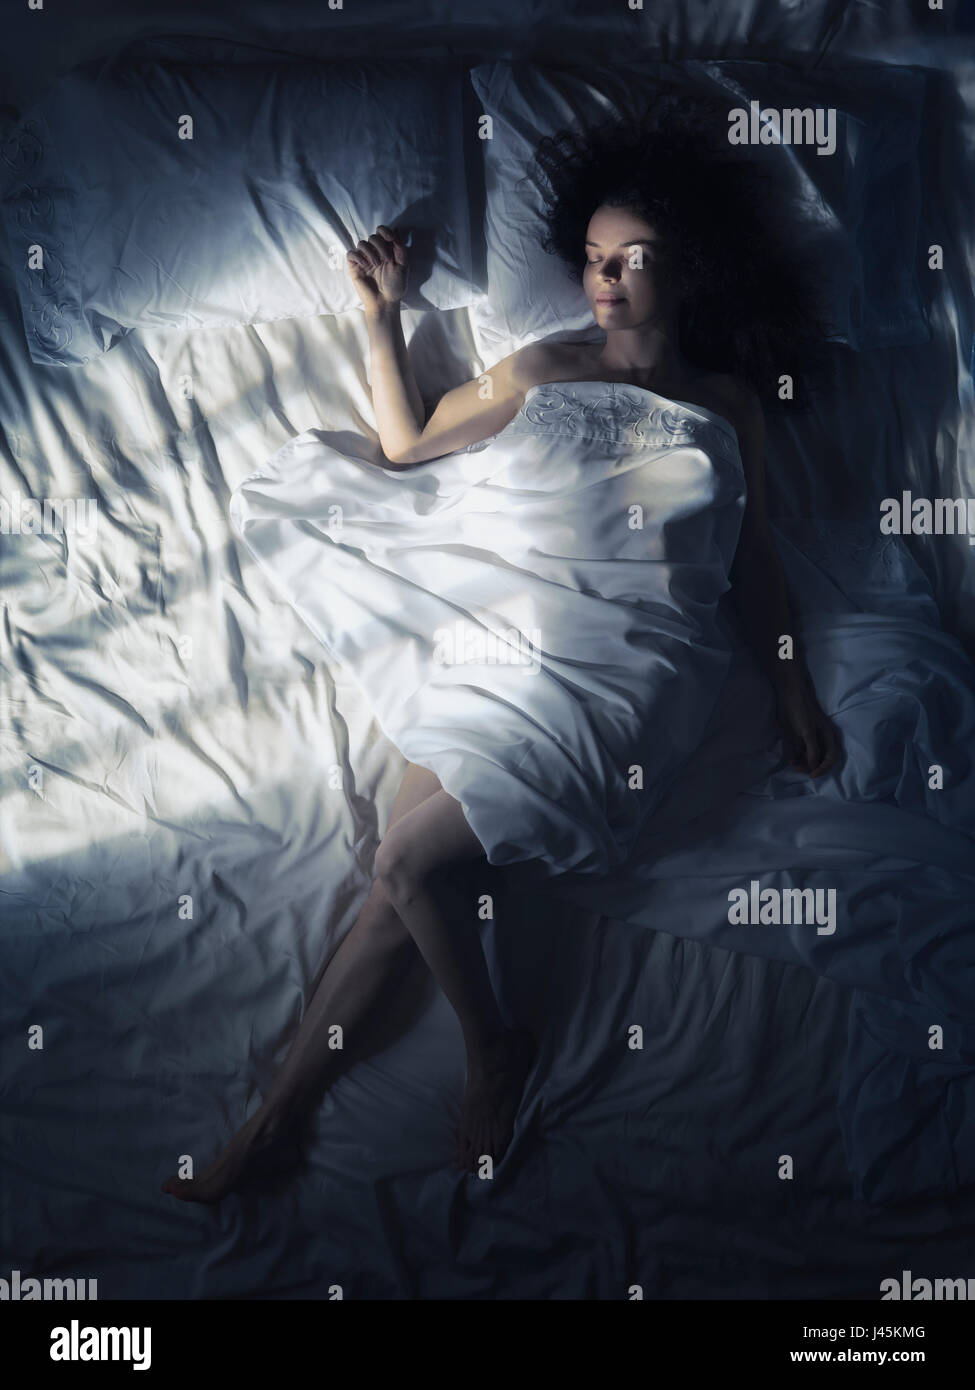 Photo prise à la verticale artistique d'une jeune femme dormir seul dans son lit la nuit, dans une chambre sombre éclairée par le clair de lune Banque D'Images